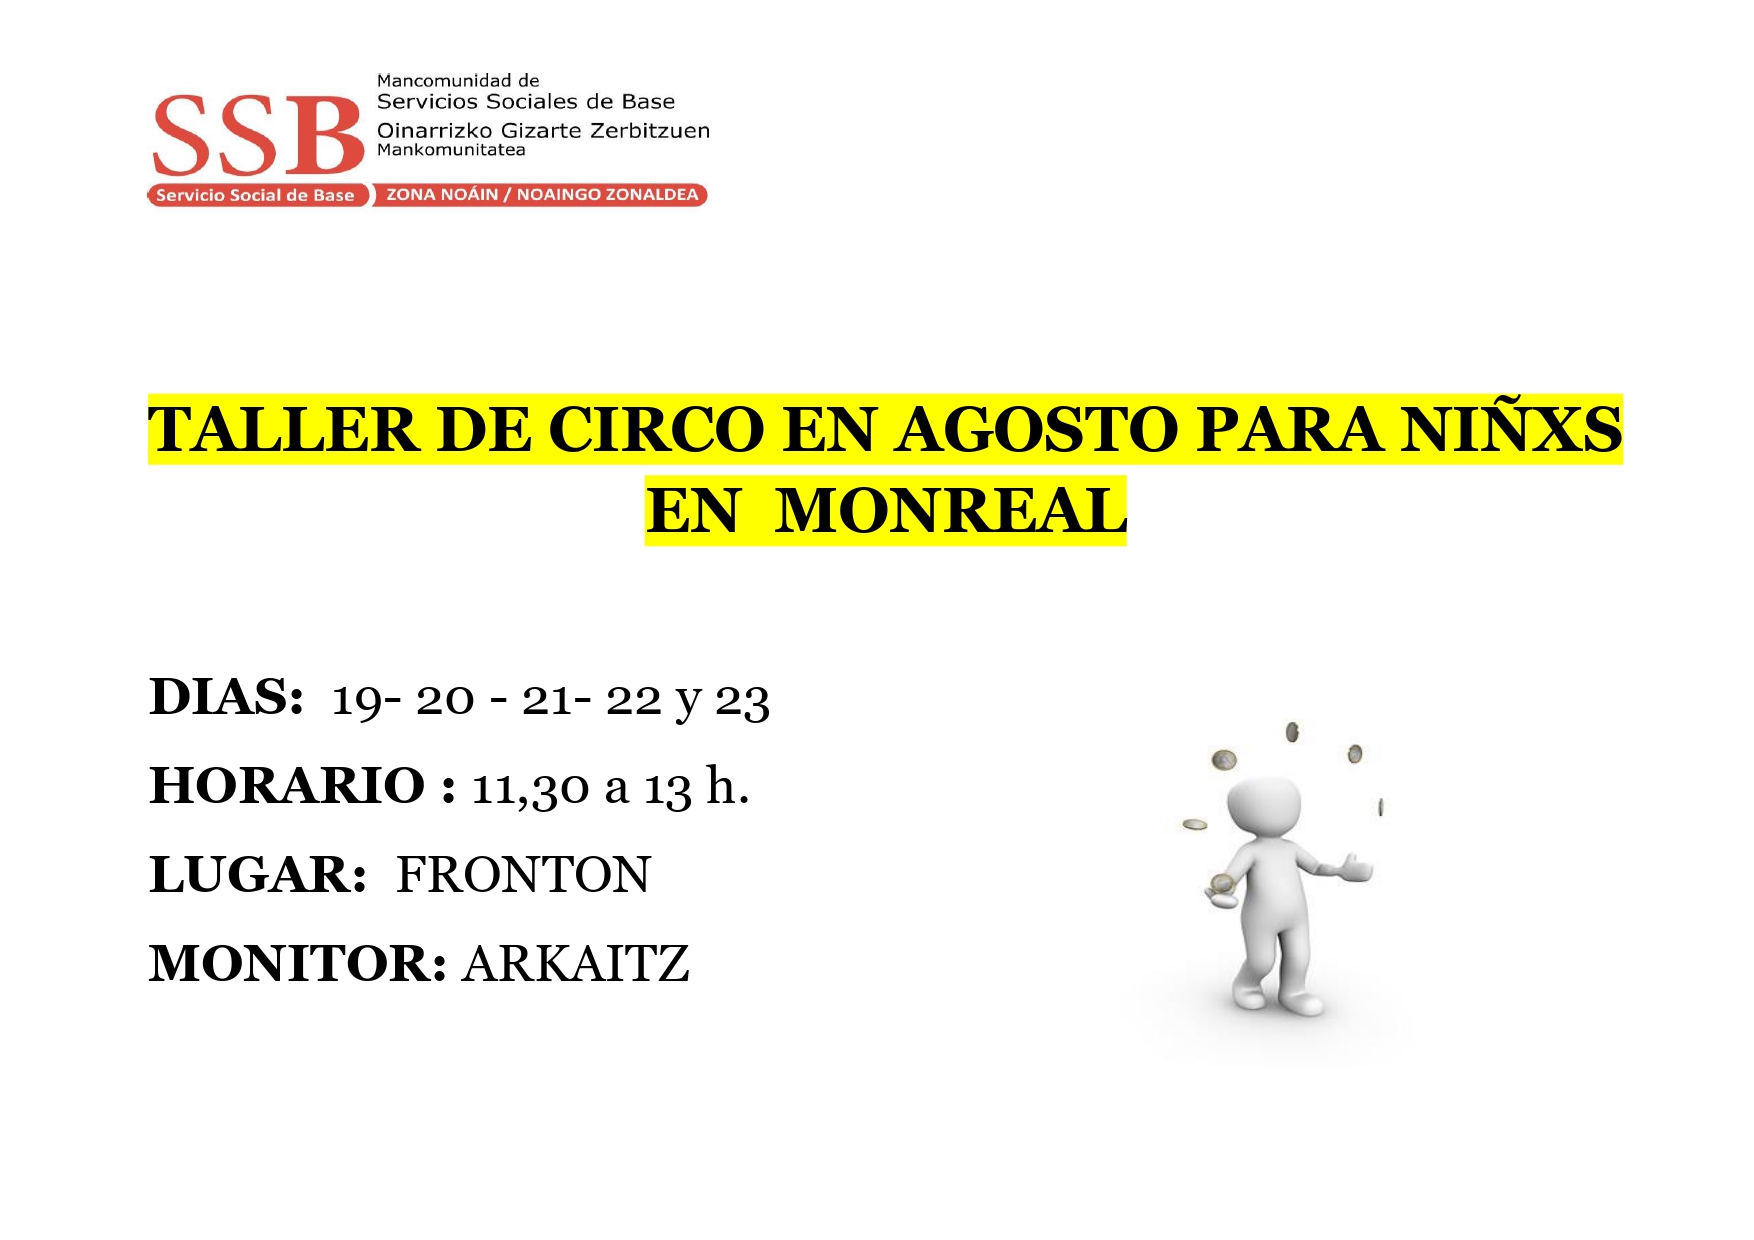 Taller de circo en Agosto para niños en Monreal/Haurrentzako abuztuko zirku-tailerra, Monrealeko haurrentzat